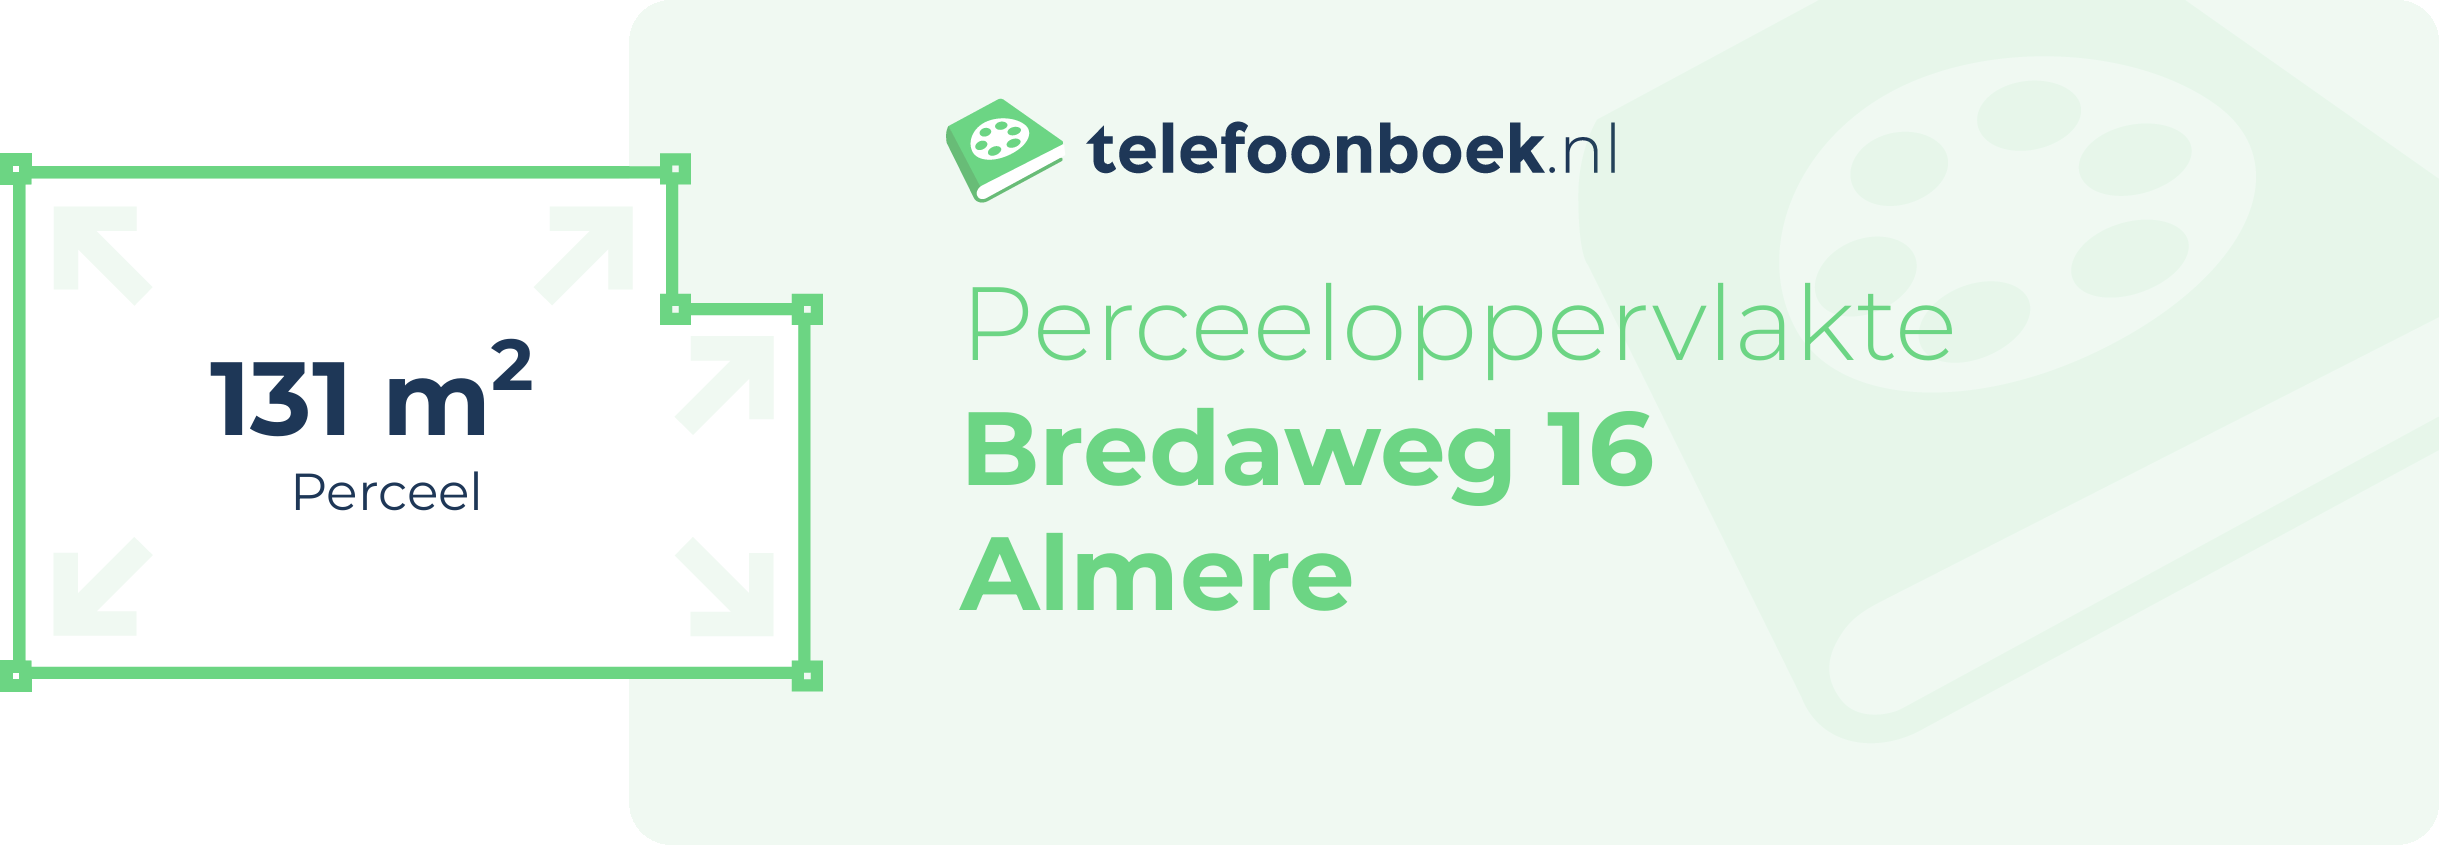 Perceeloppervlakte Bredaweg 16 Almere